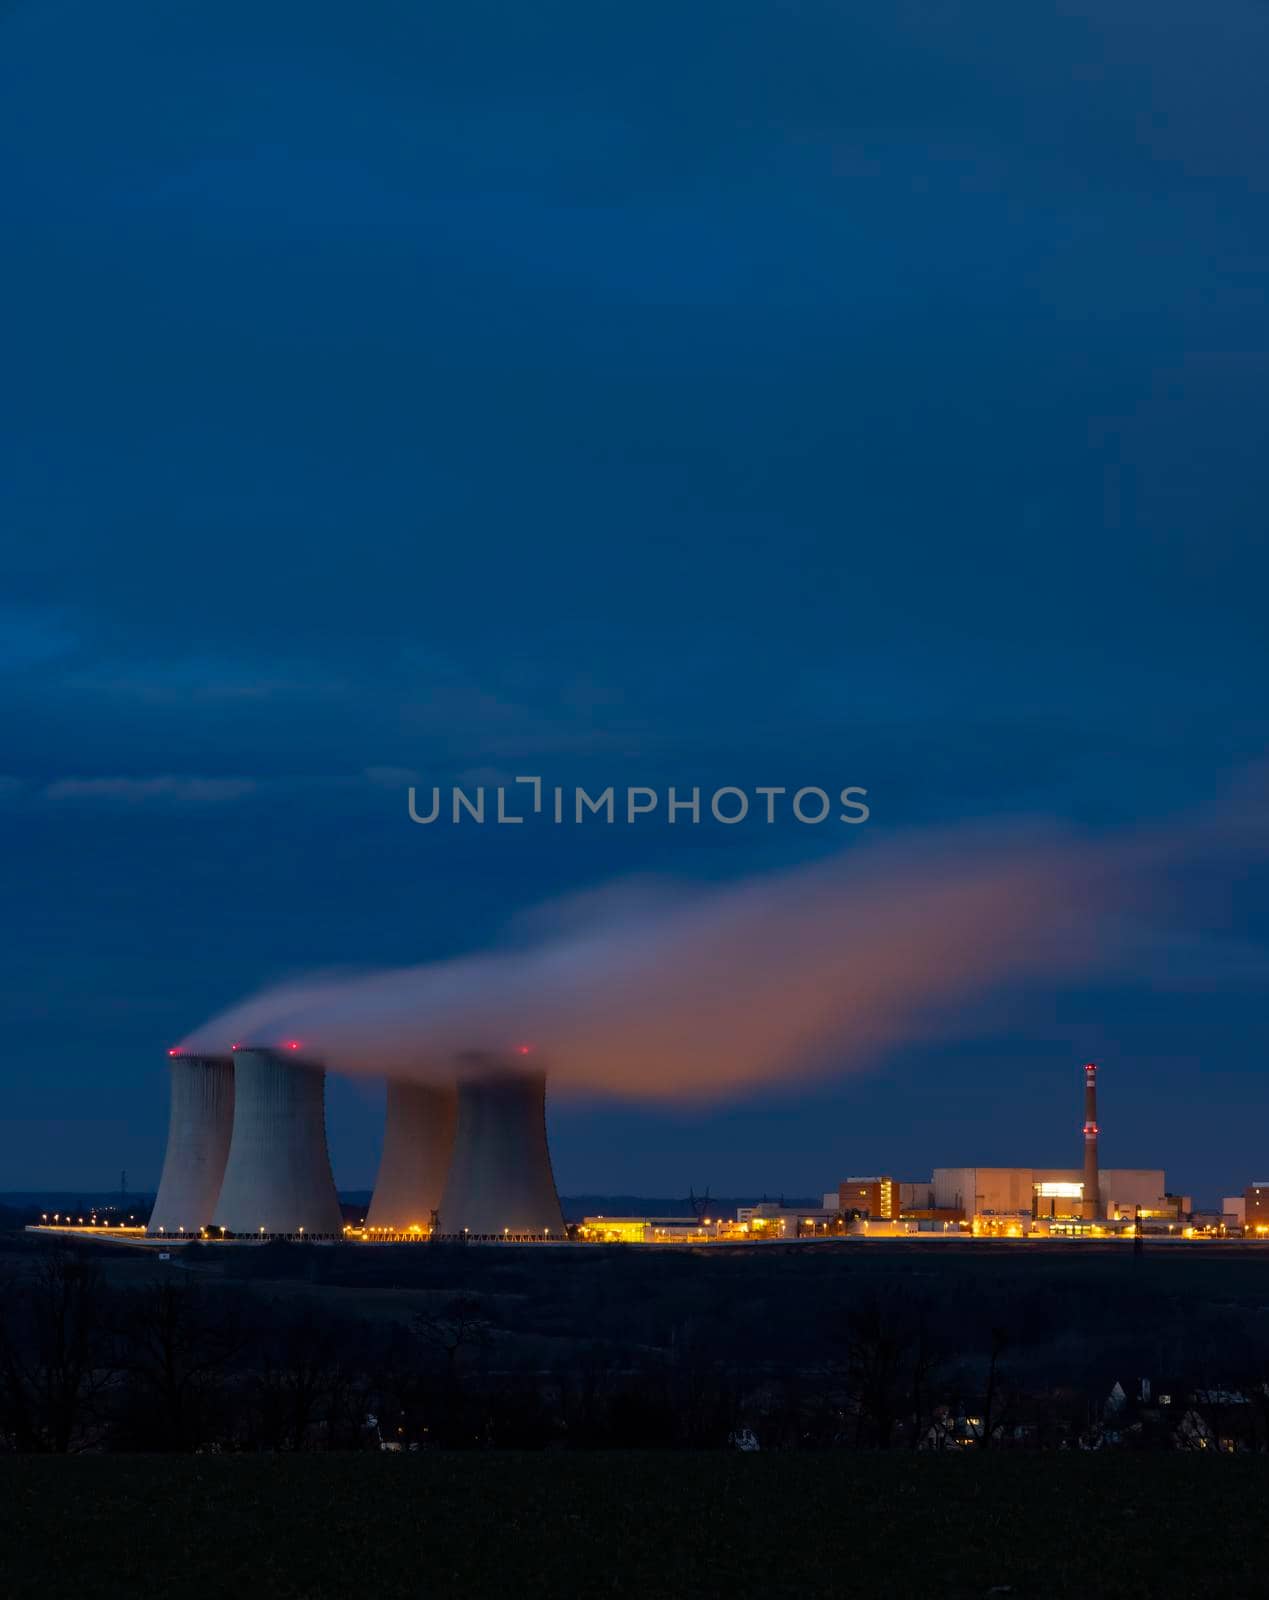 Nuclear power station Dukovany, Vysocina region, Czech republic by phbcz